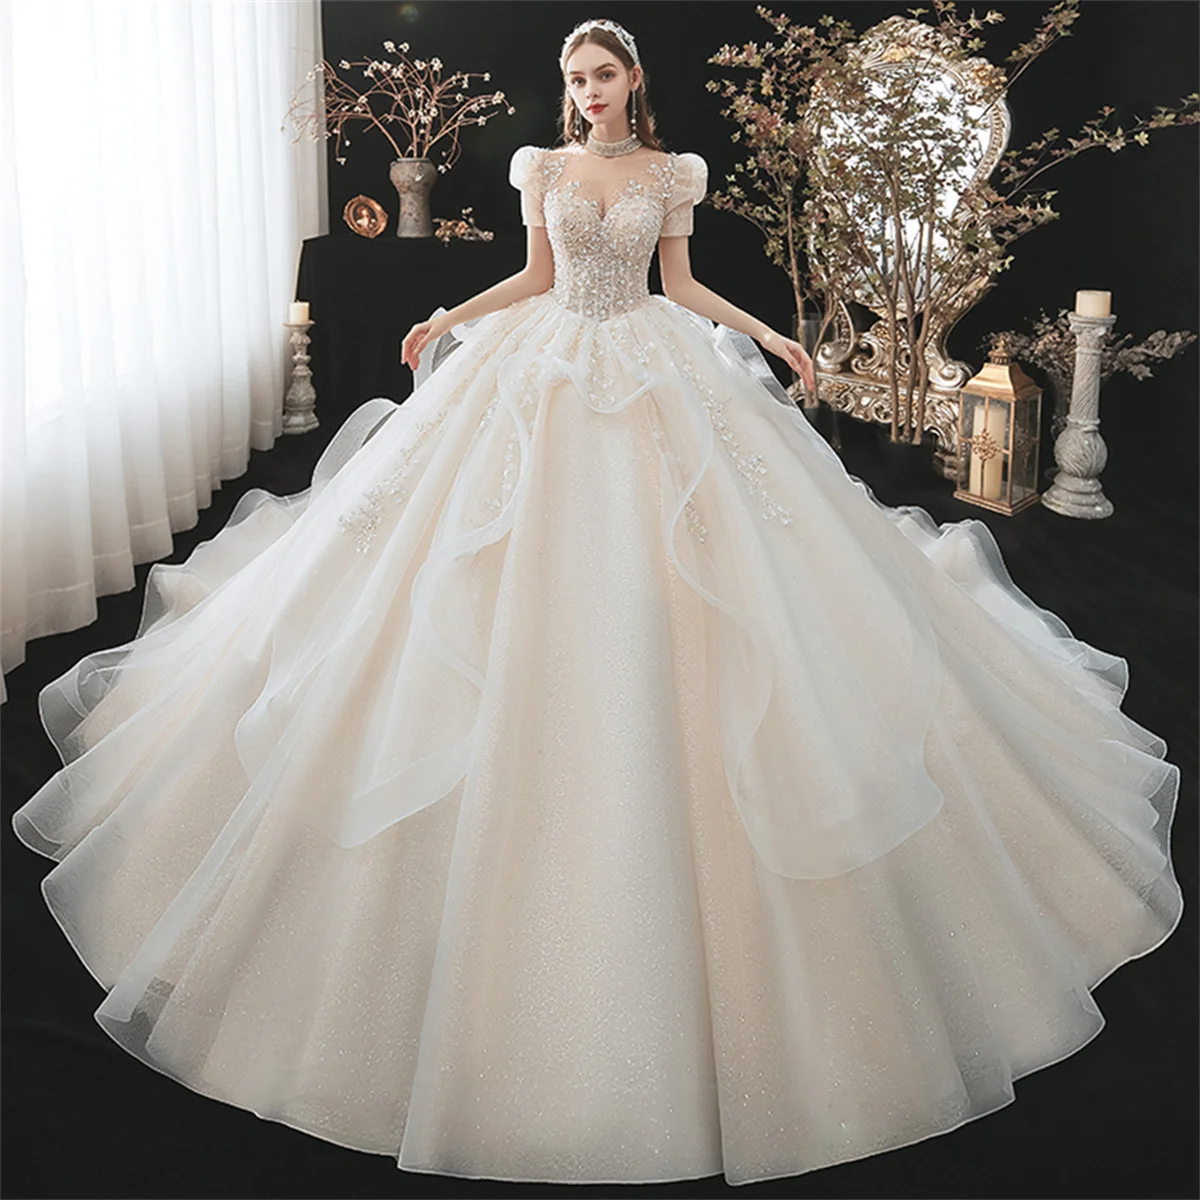 

Robe De Soirée De Mariage Pearls High Neck Ball Gown Wedding Dresses Luxury Suknia Slubna Tulle Vintage Vestidos De Novia فساتين